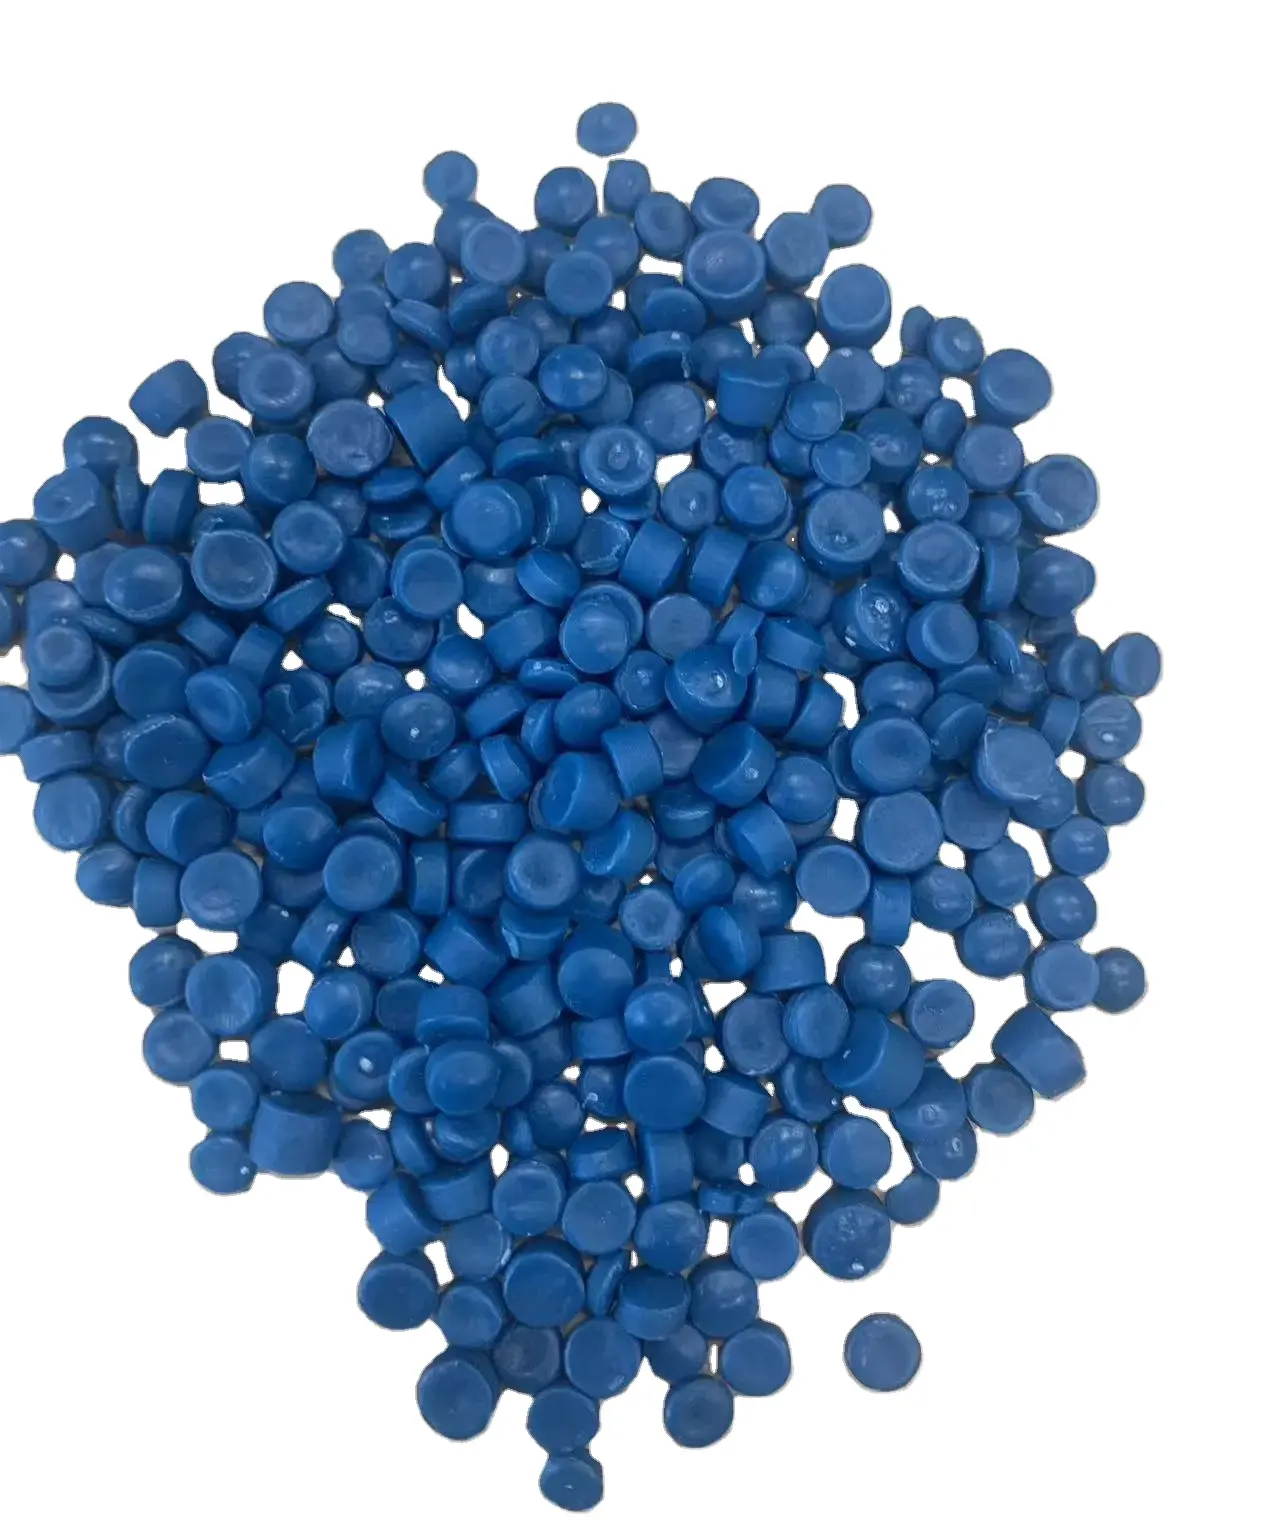 저렴한 HDPE 블루 드럼 리그라인드/HDPE 블루 드럼 플레이크/HDPE 블루 드럼 스크랩 제공